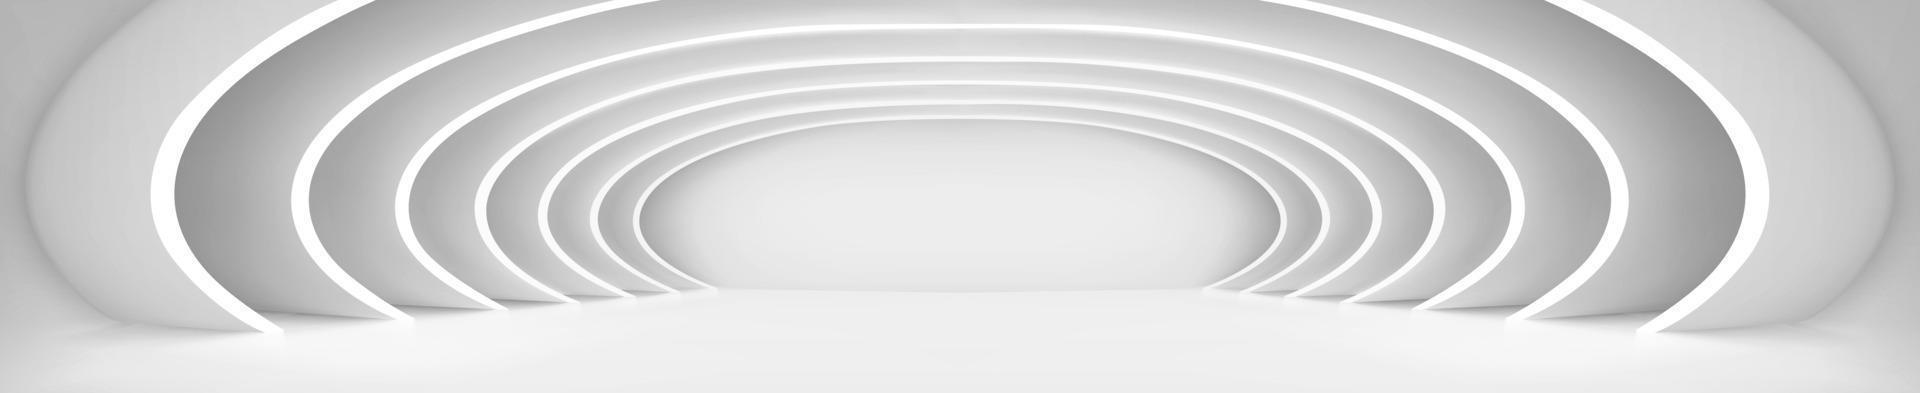 túnel blanco abstracto bajo múltiples arcos redondos vector